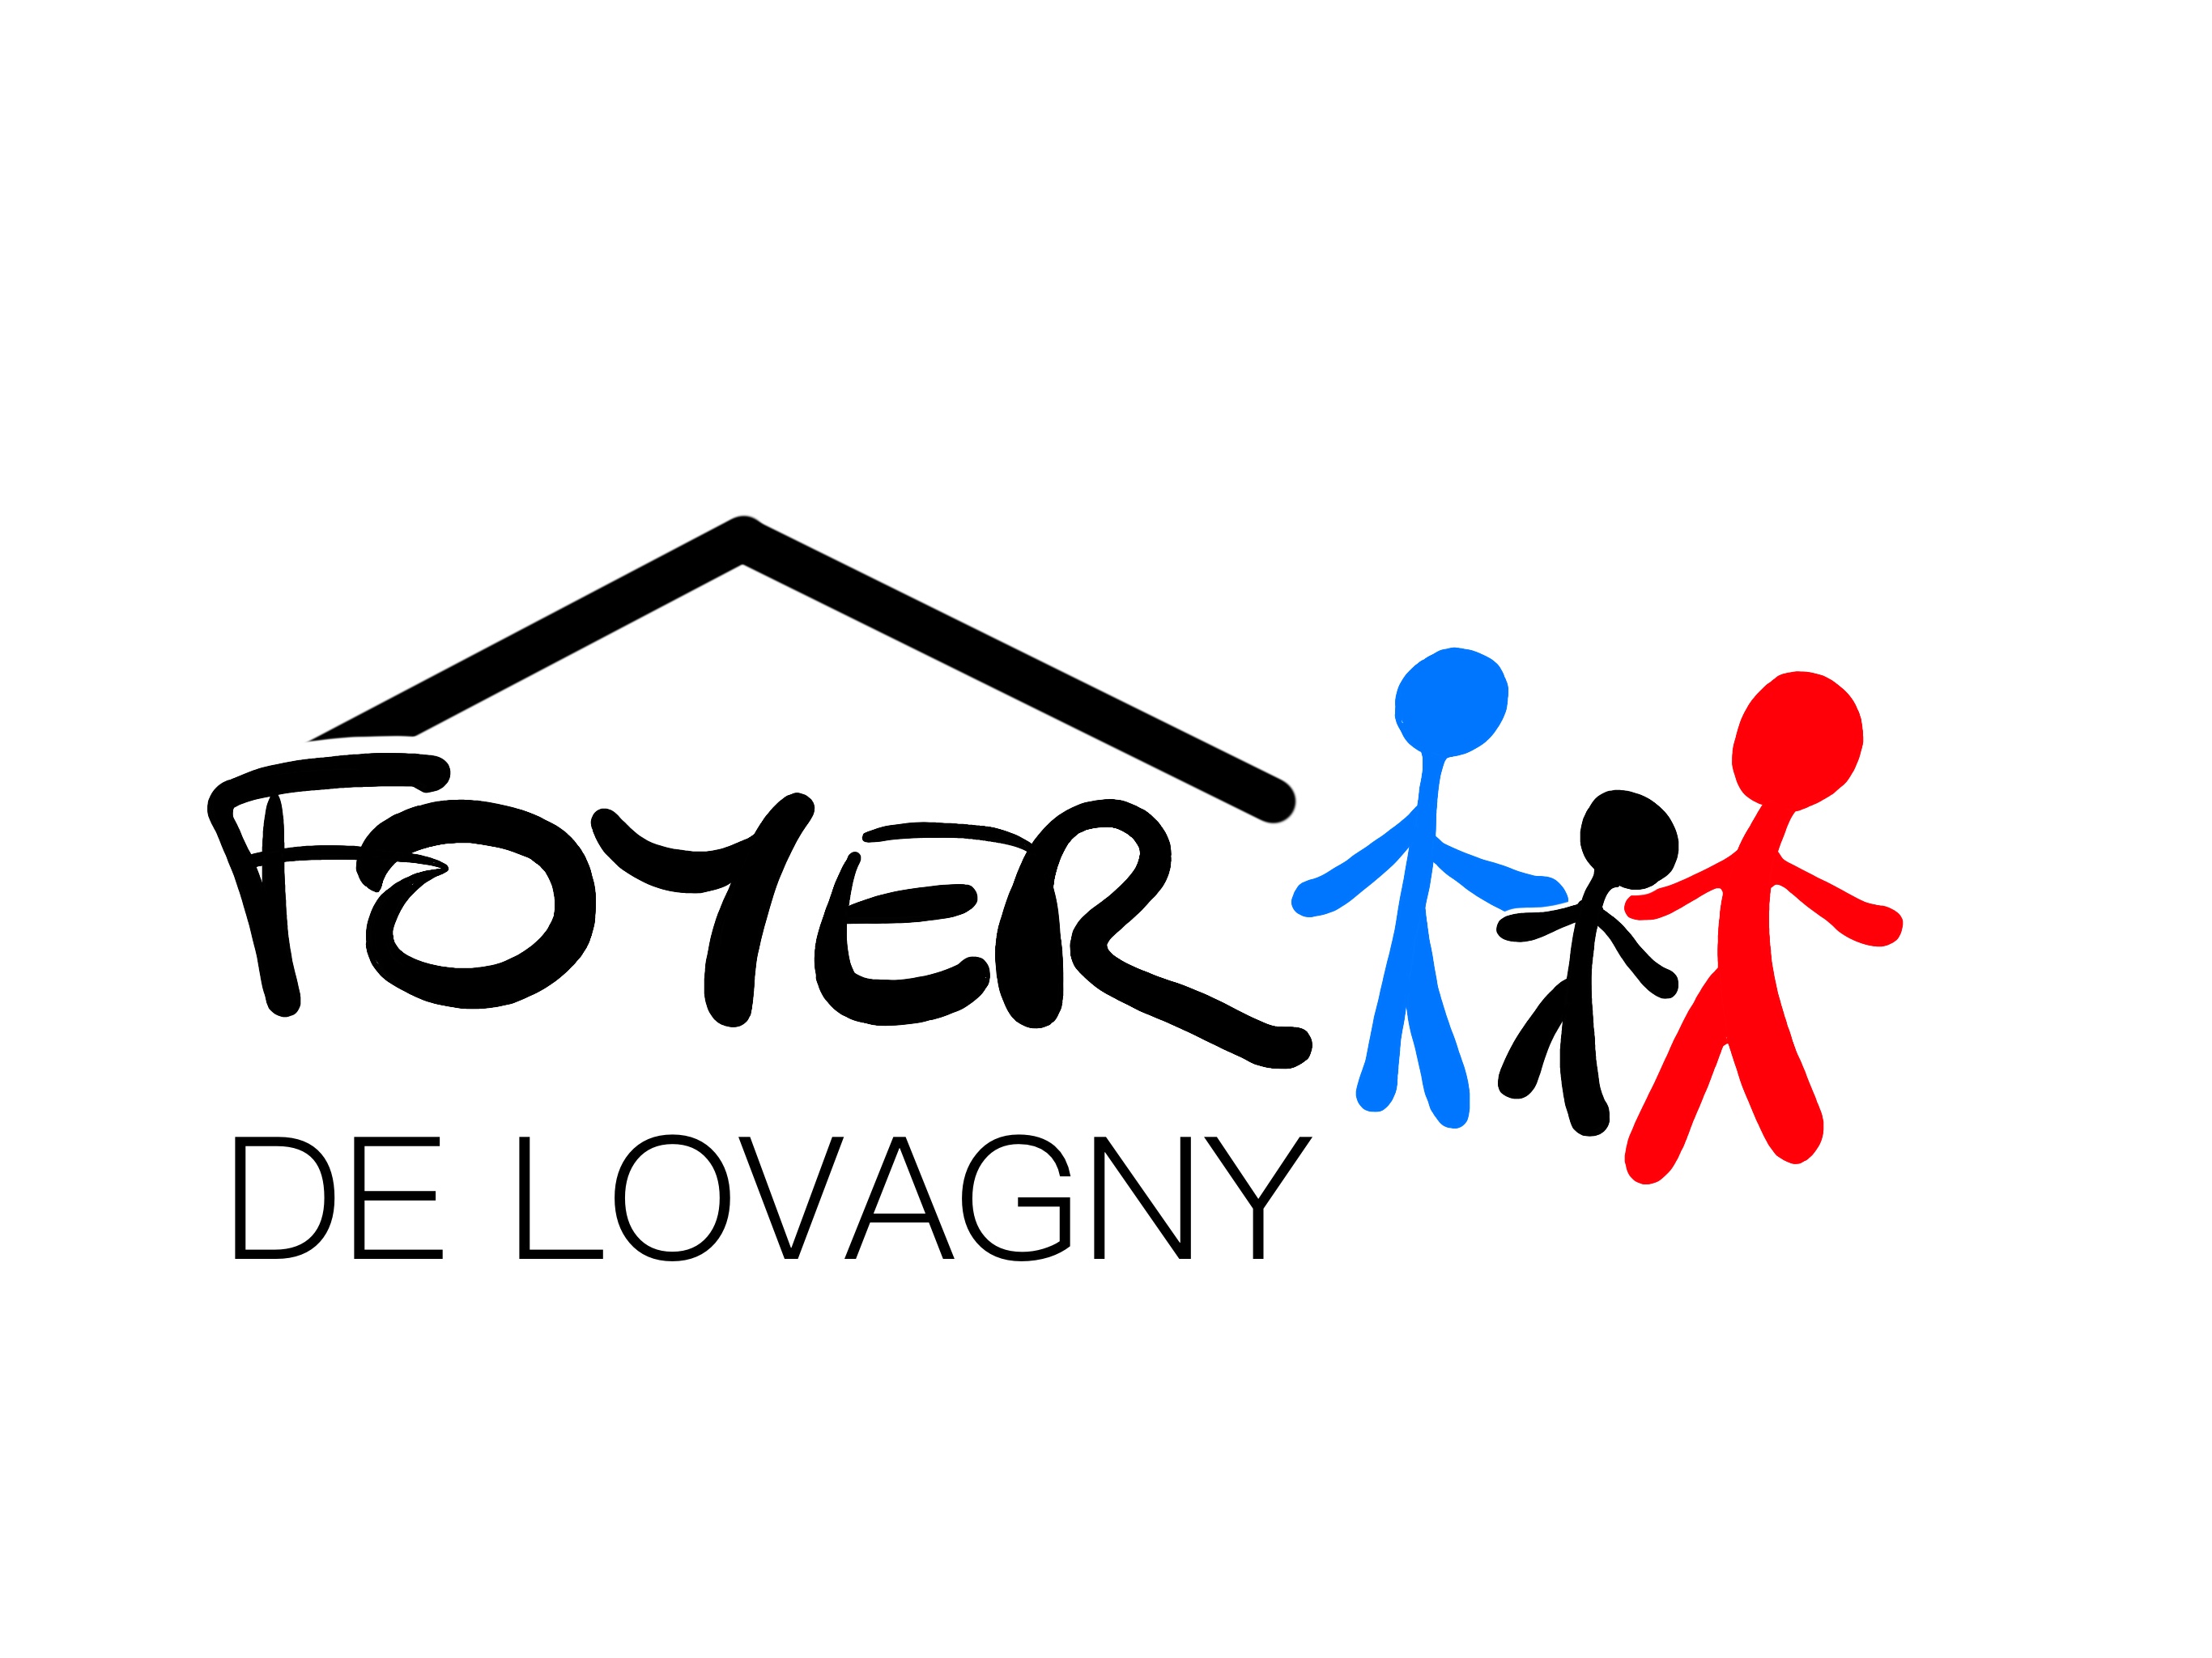 logo foyerdelovagny 2020